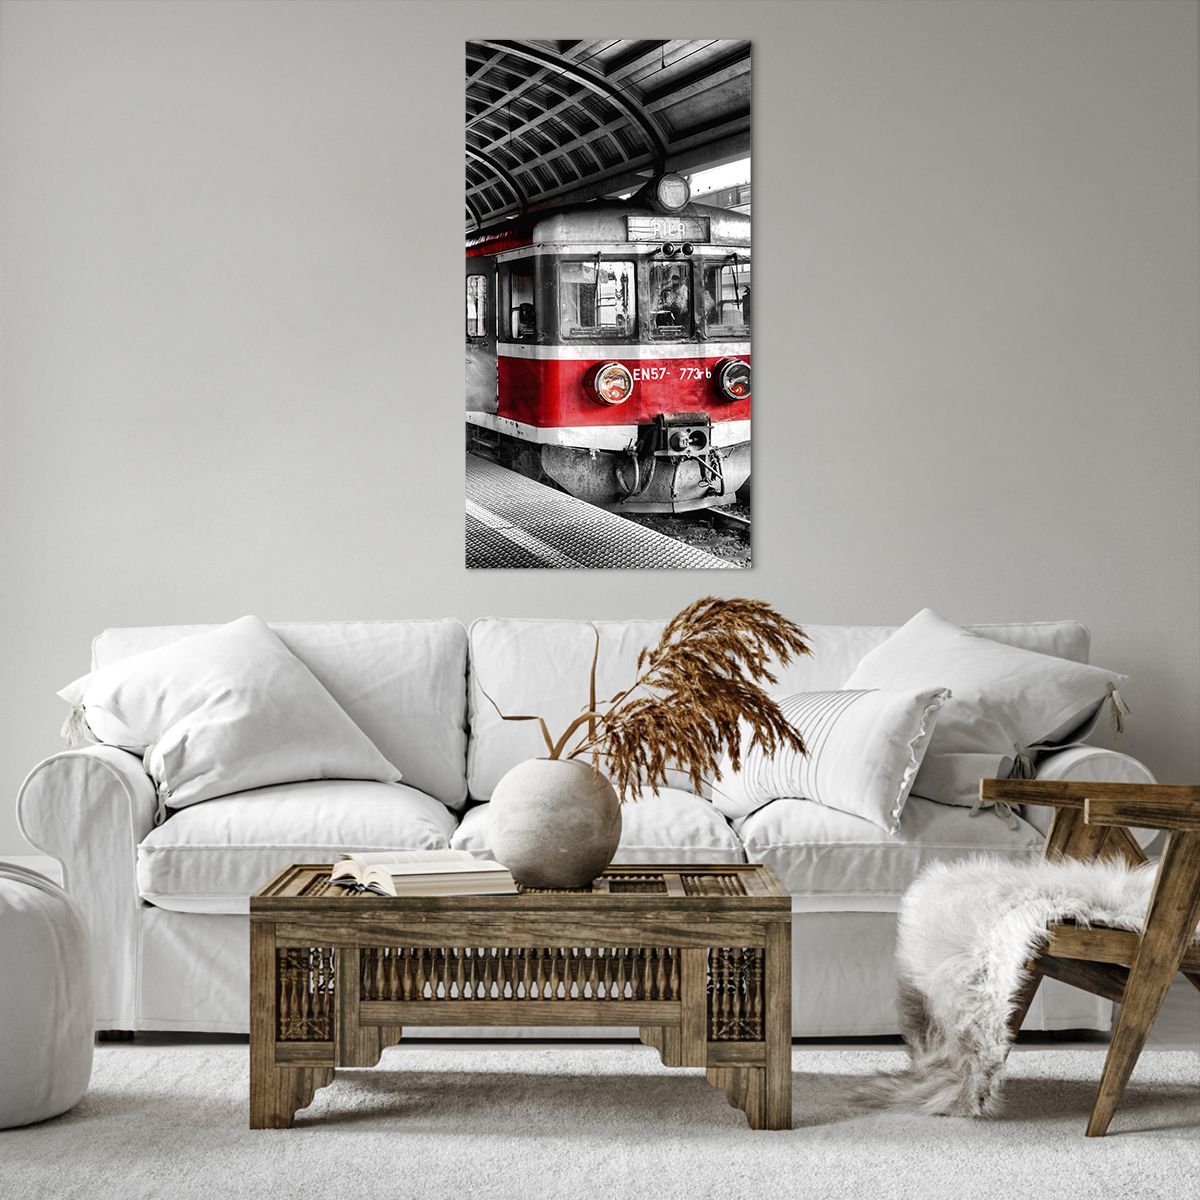 Bild auf Leinwand Personenzug, Bild auf Leinwand Bahnhof, Bild auf Leinwand Plattform, Bild auf Leinwand Lokomotive, Bild auf Leinwand Schwarz Und Weiß